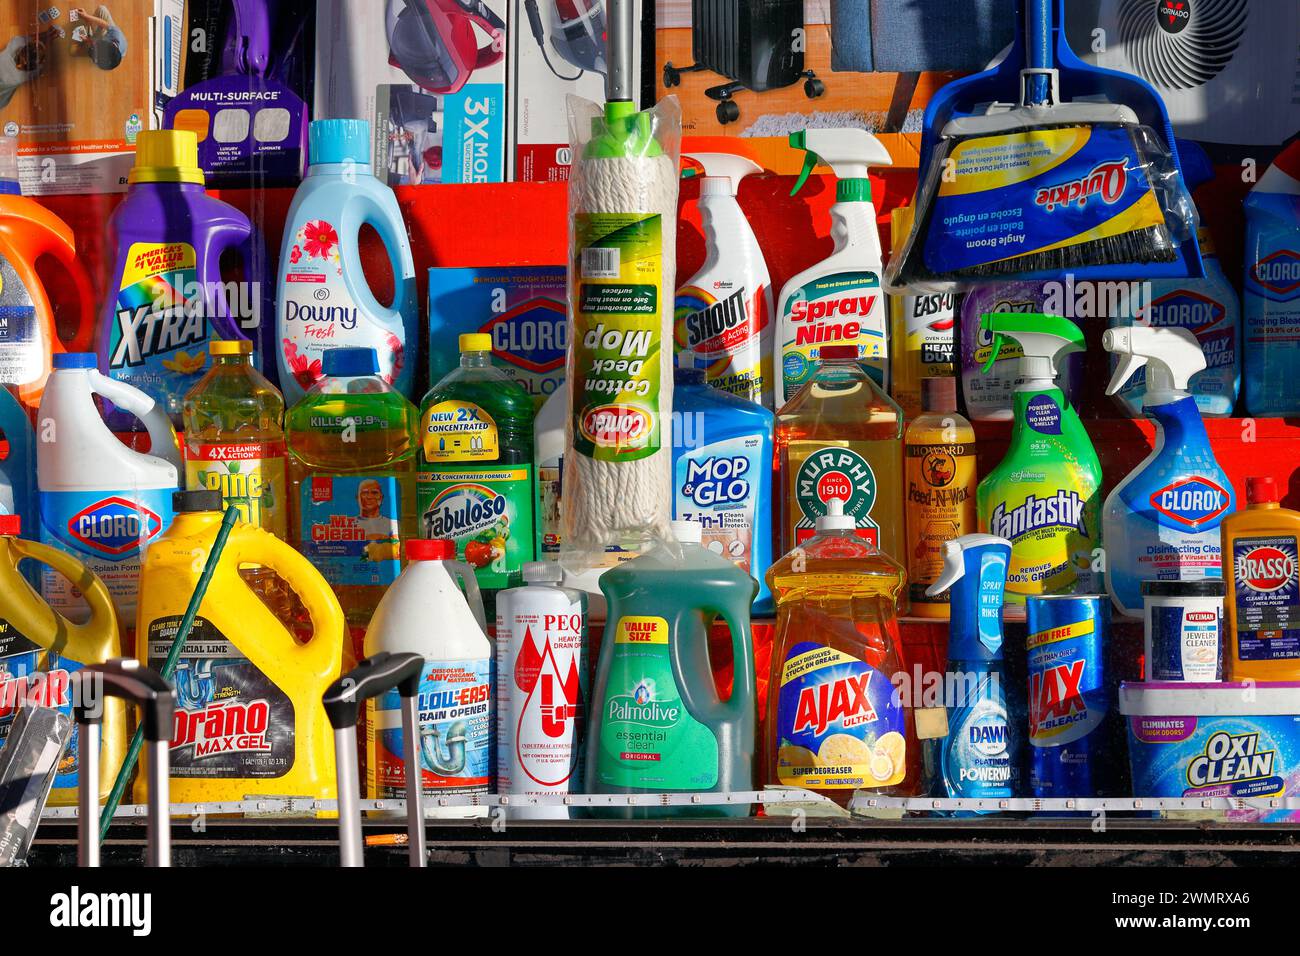 Eine Schaufensterpräsentation amerikanischer Haushaltsreinigungsmittel, Seifen und Reinigungsmittel. Stockfoto